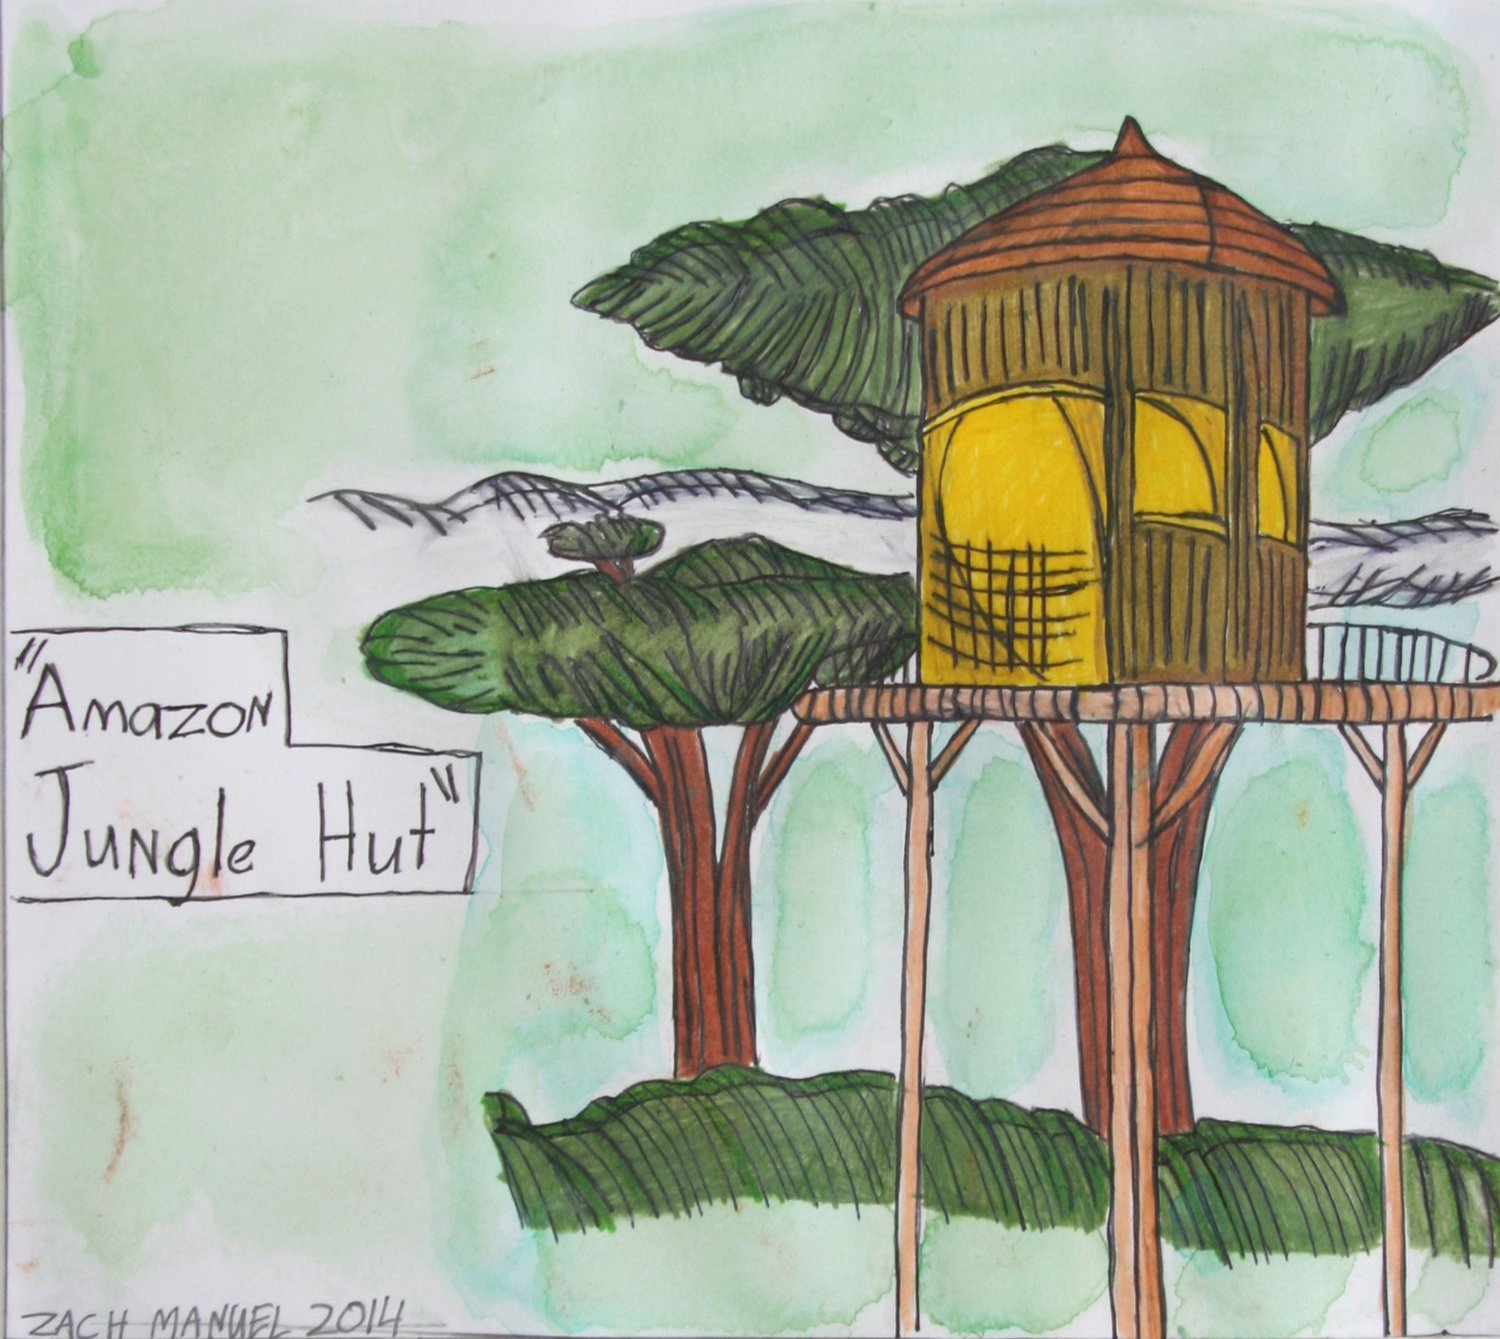 Amazon Jungle Hut